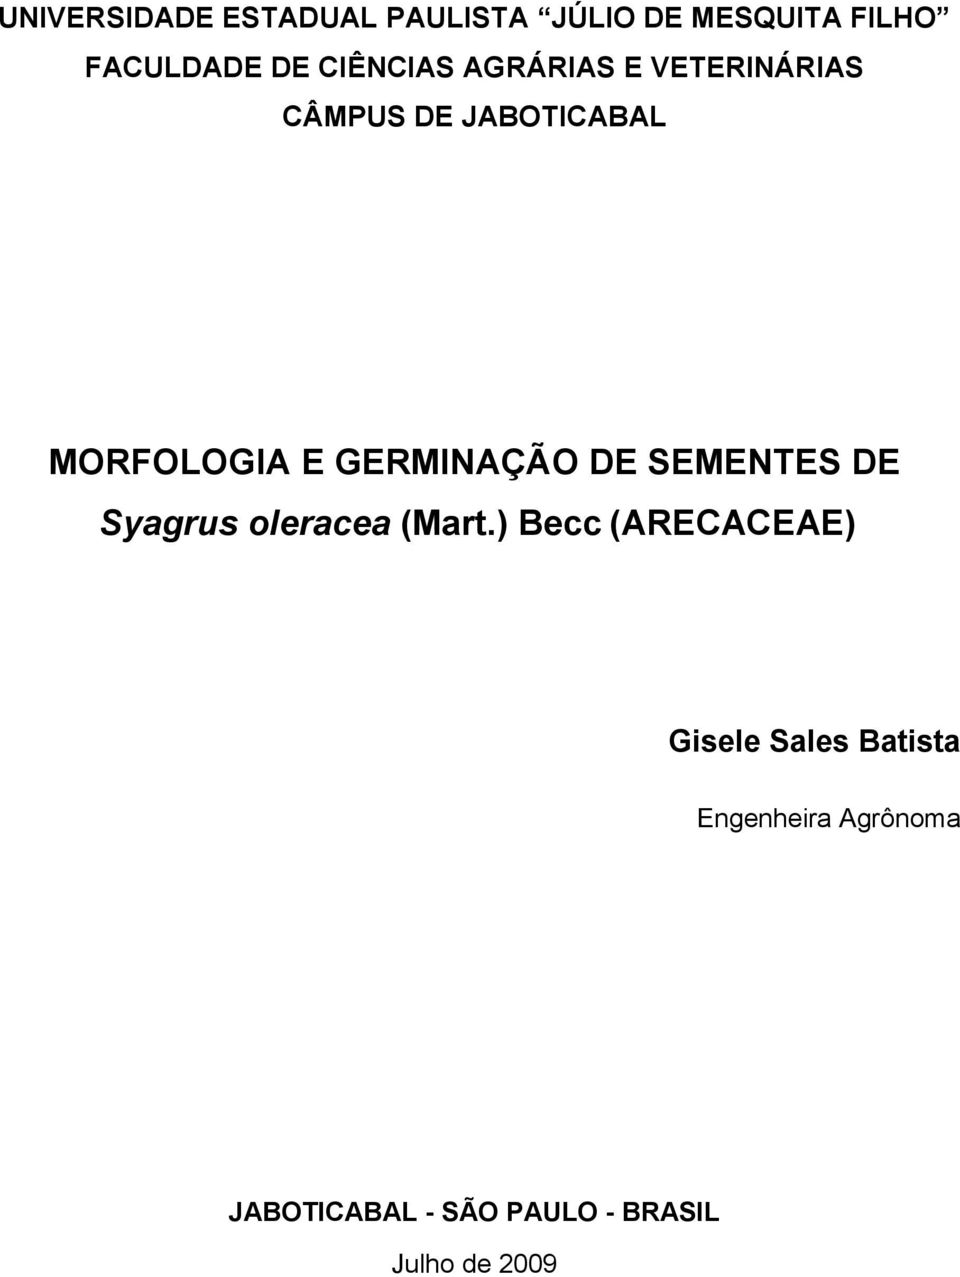 GERMINAÇÃO DE SEMENTES DE Syagrus oleracea (Mart.